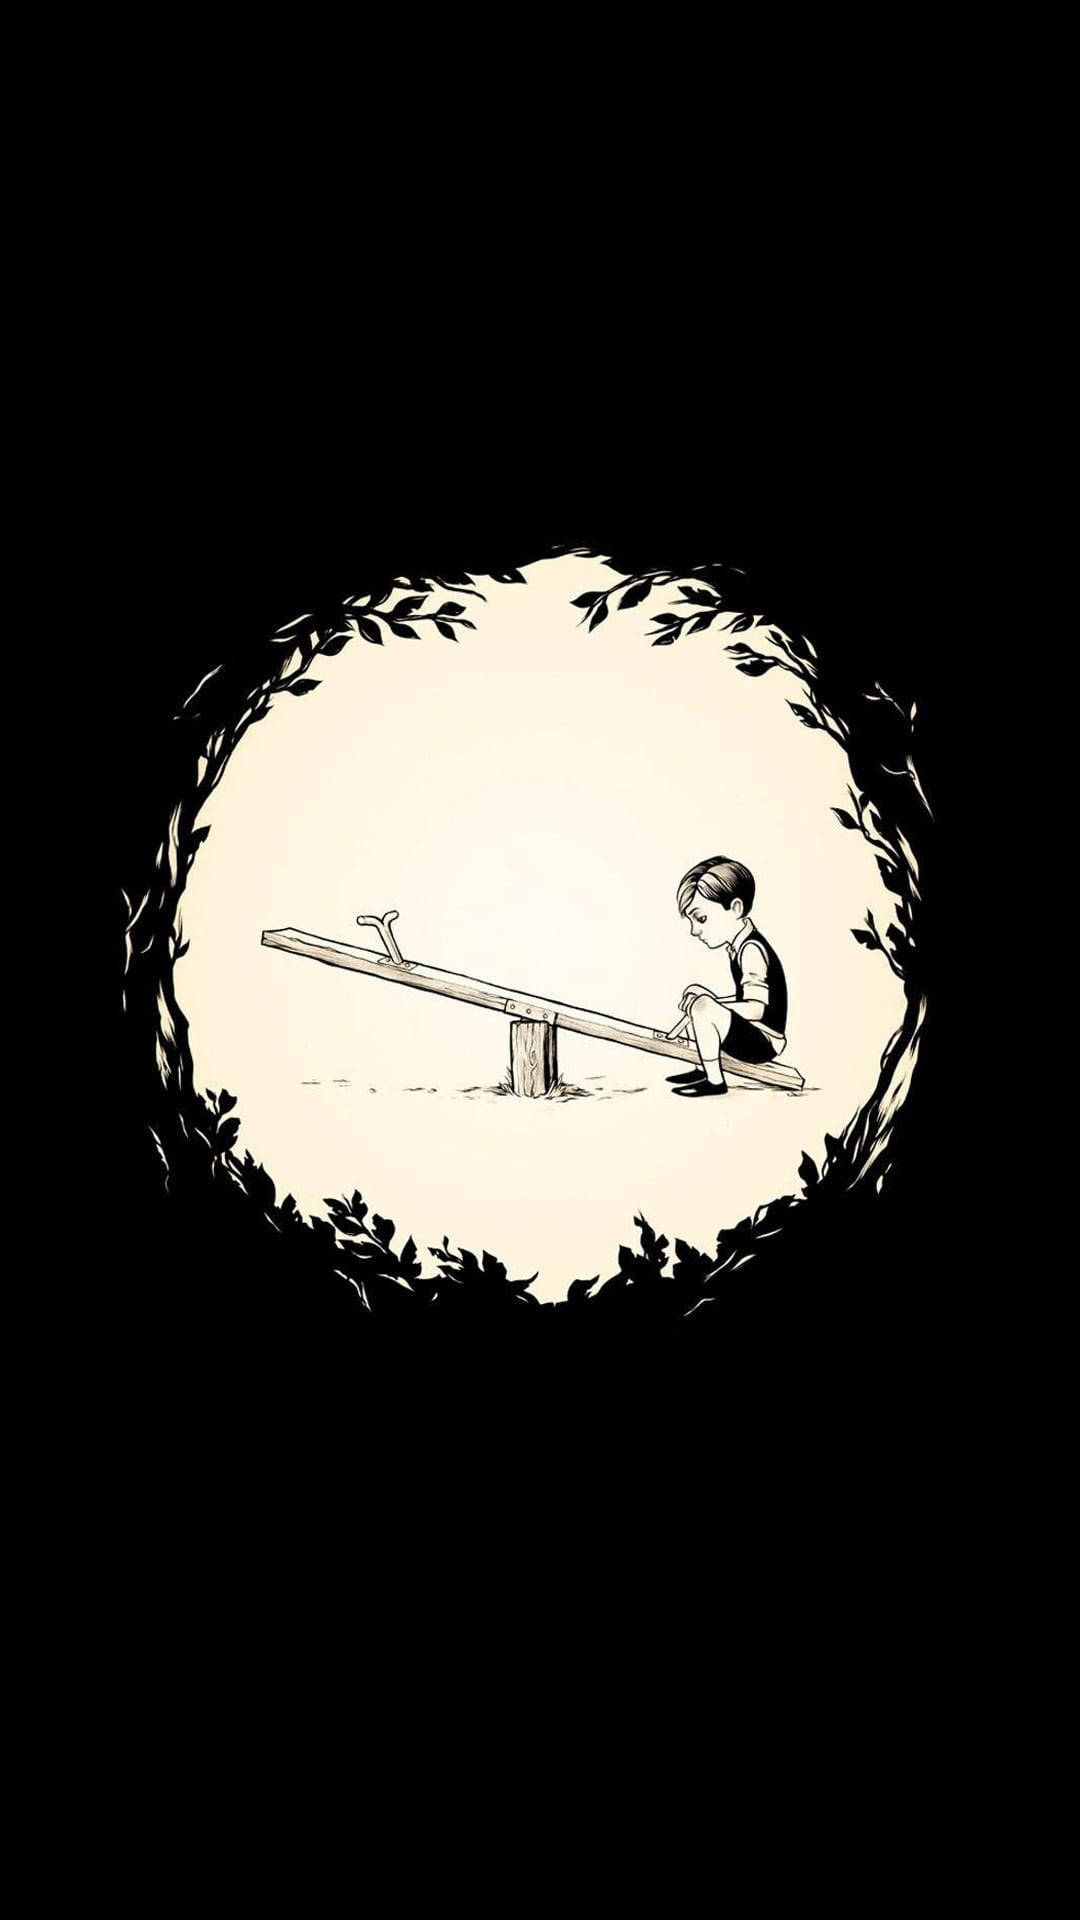 Einzigartigezeichentrickbild Mit Einem Traurigen Jungen Auf Einer Wippe Wallpaper